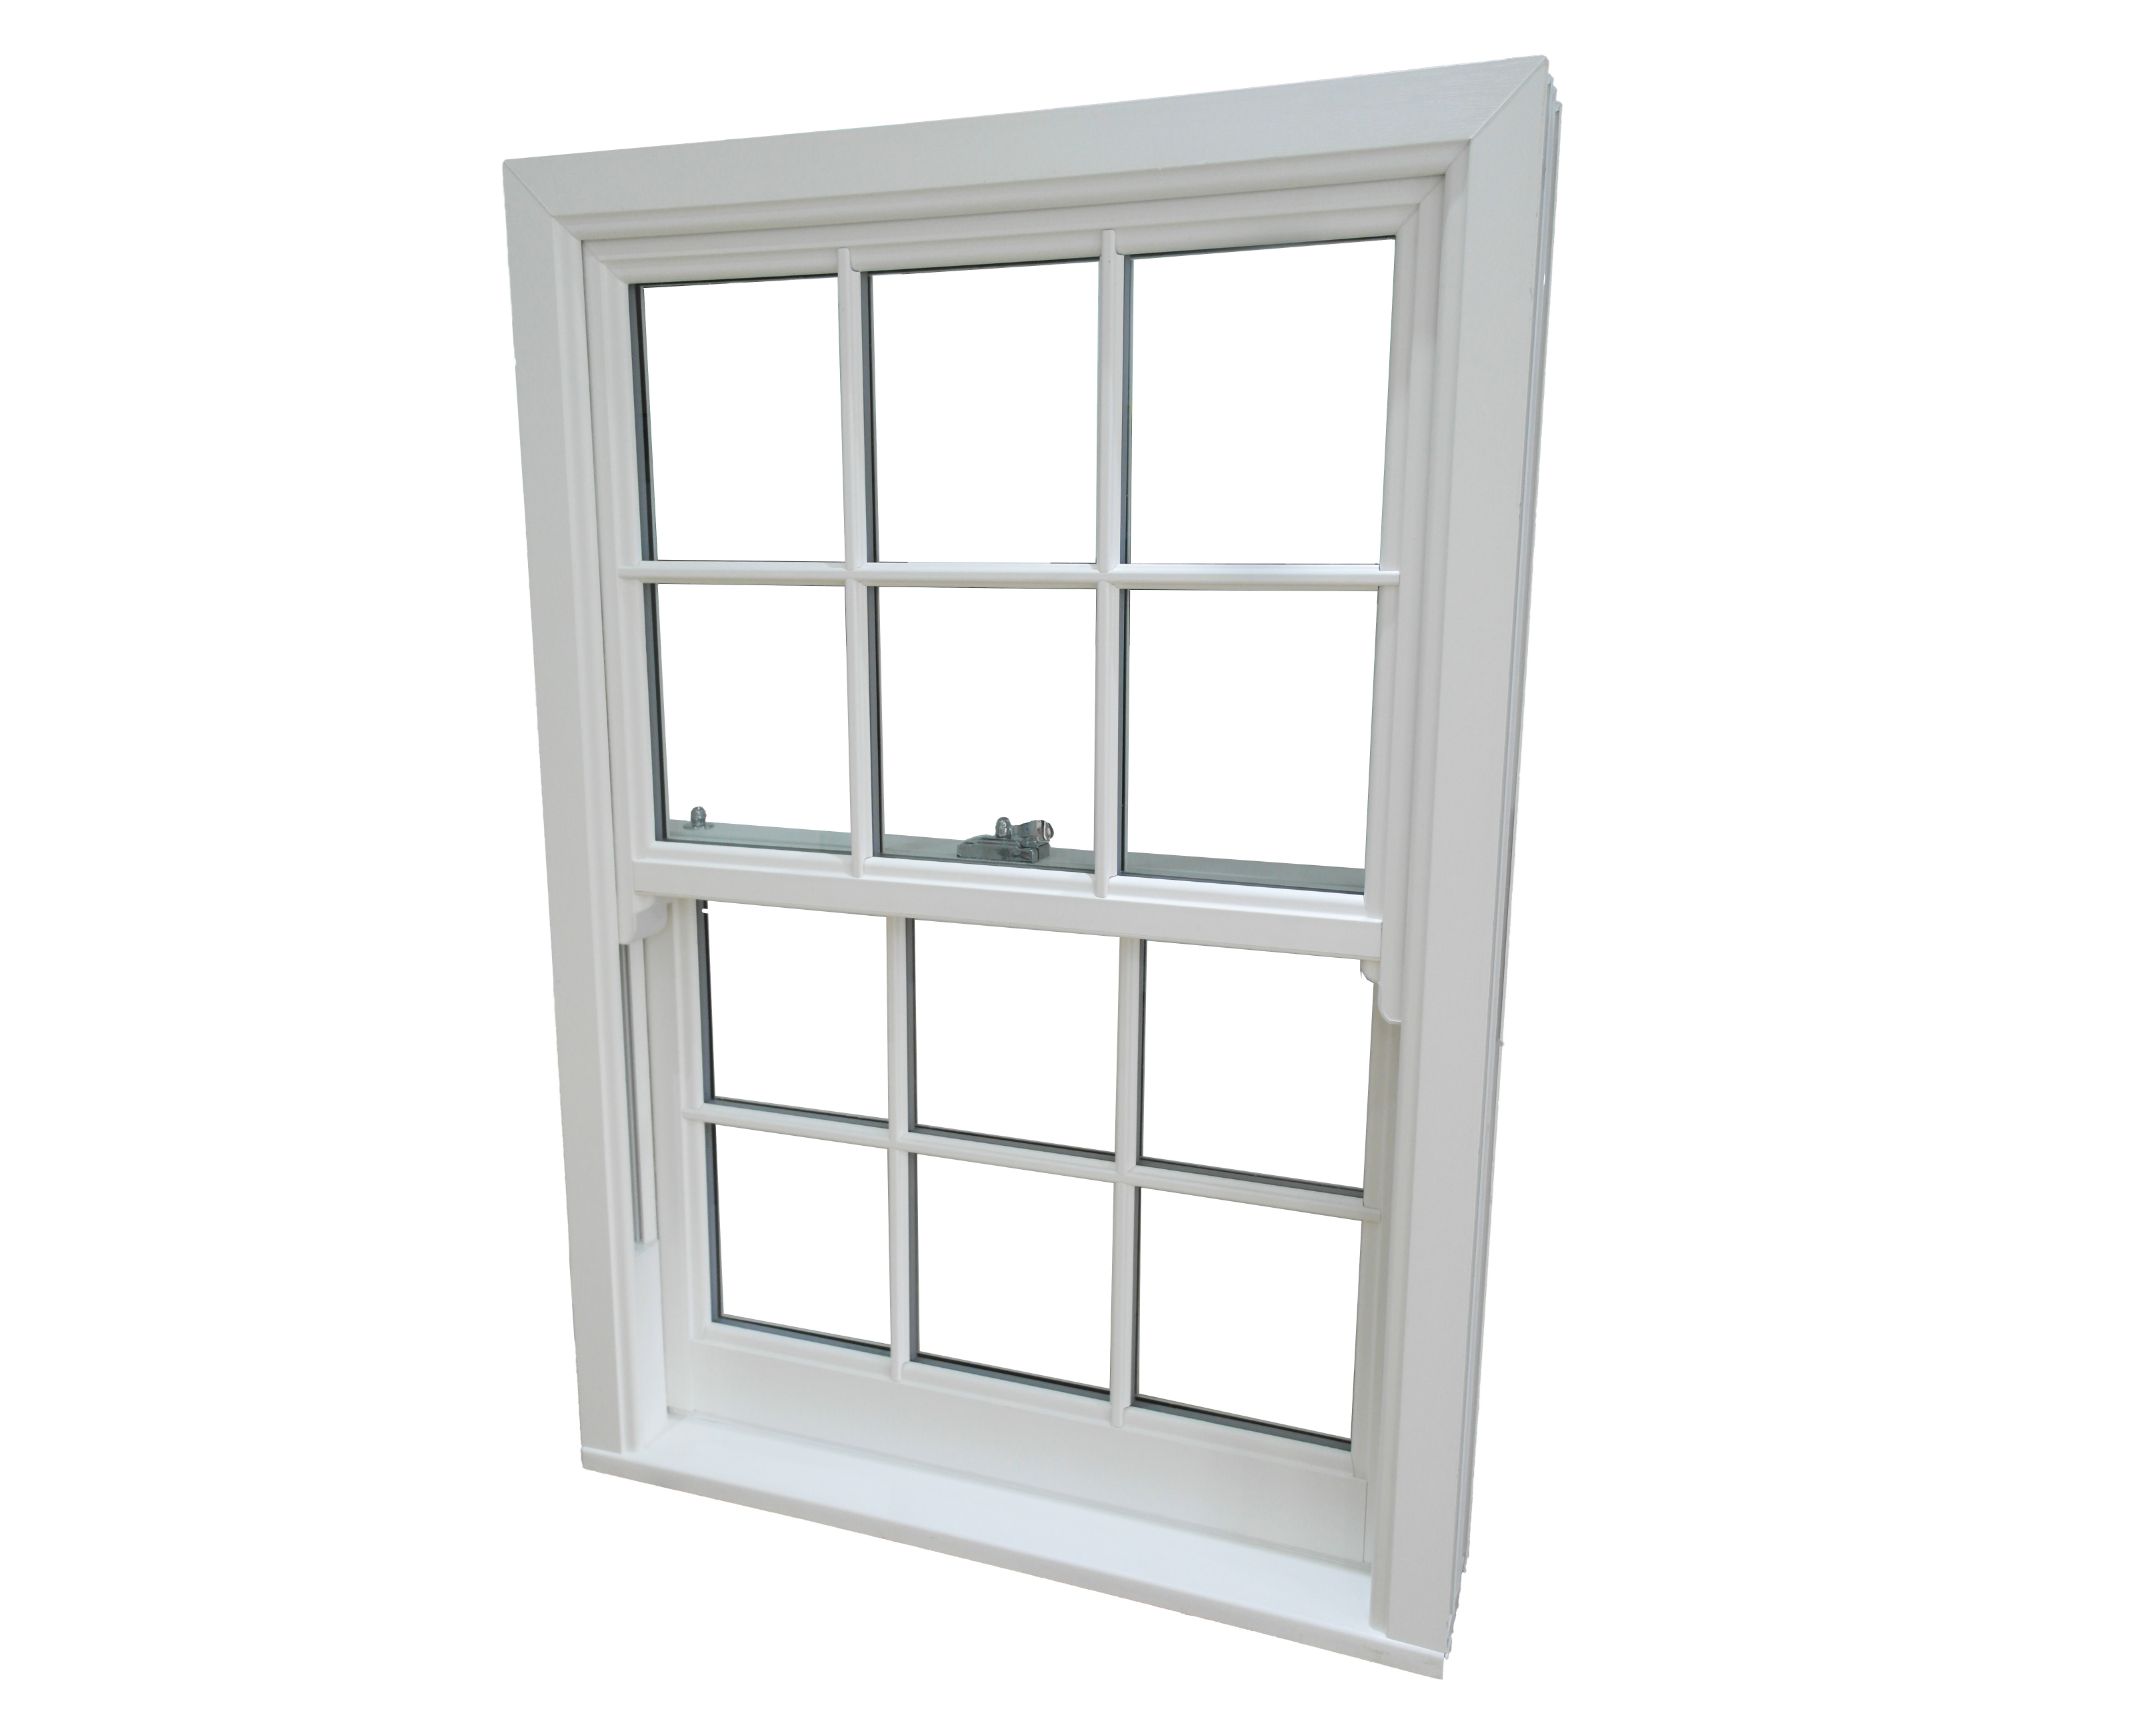 Quickslide Sash Window Supplier